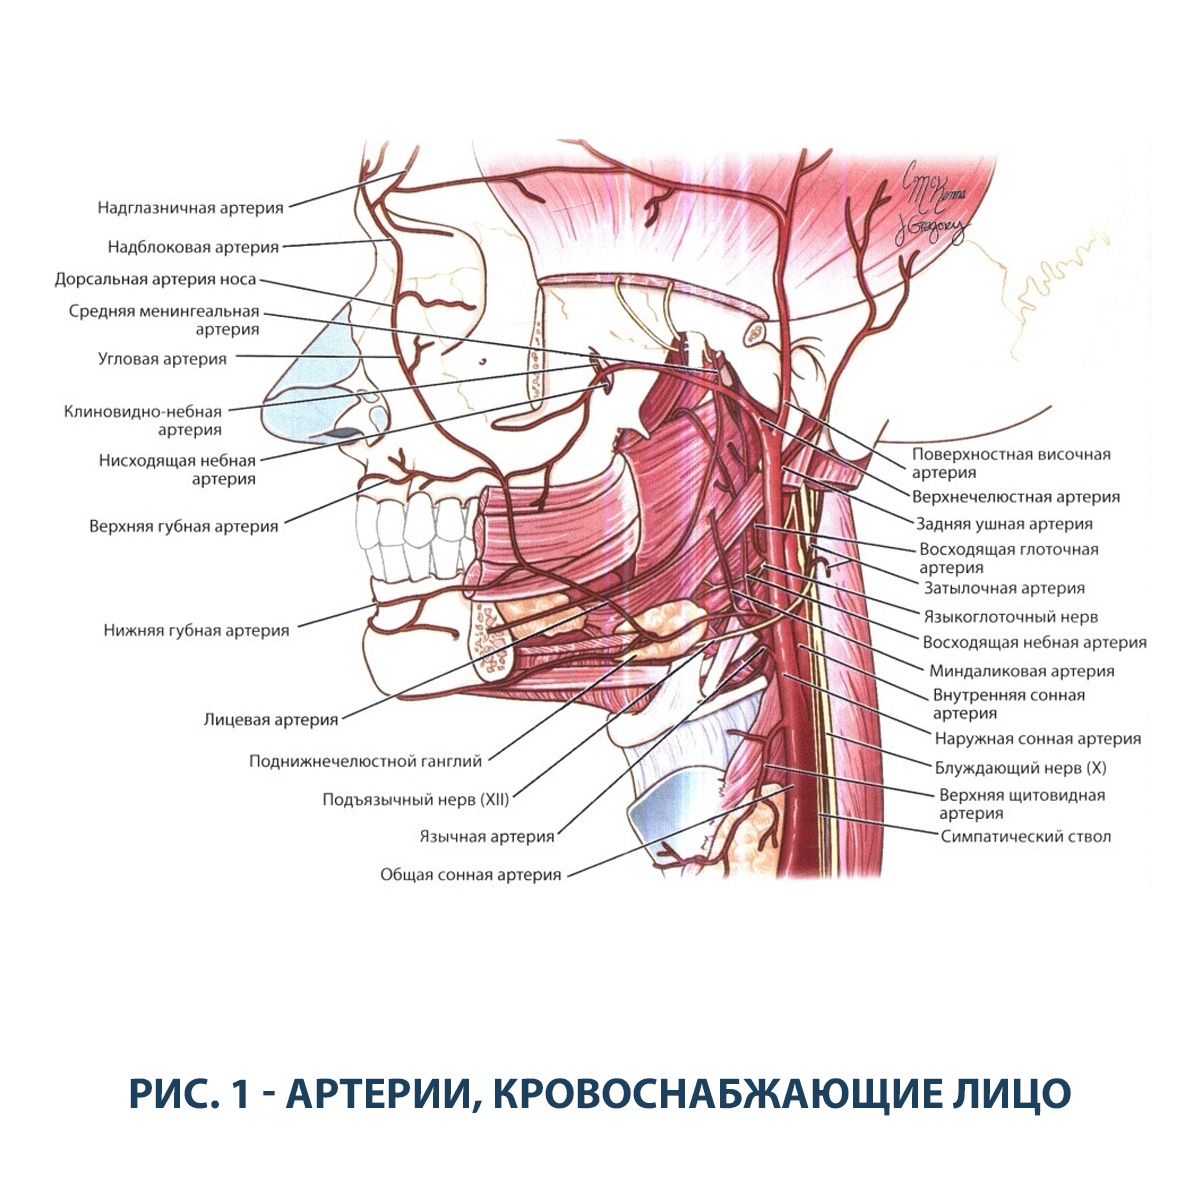 Нисходящий нерв. Лицевая артерия ветви схема. Верхнечелюстная артерия анатомия ветви. Восходящая глоточная артерия анатомия. Верхняя щитовидная артерия схема.